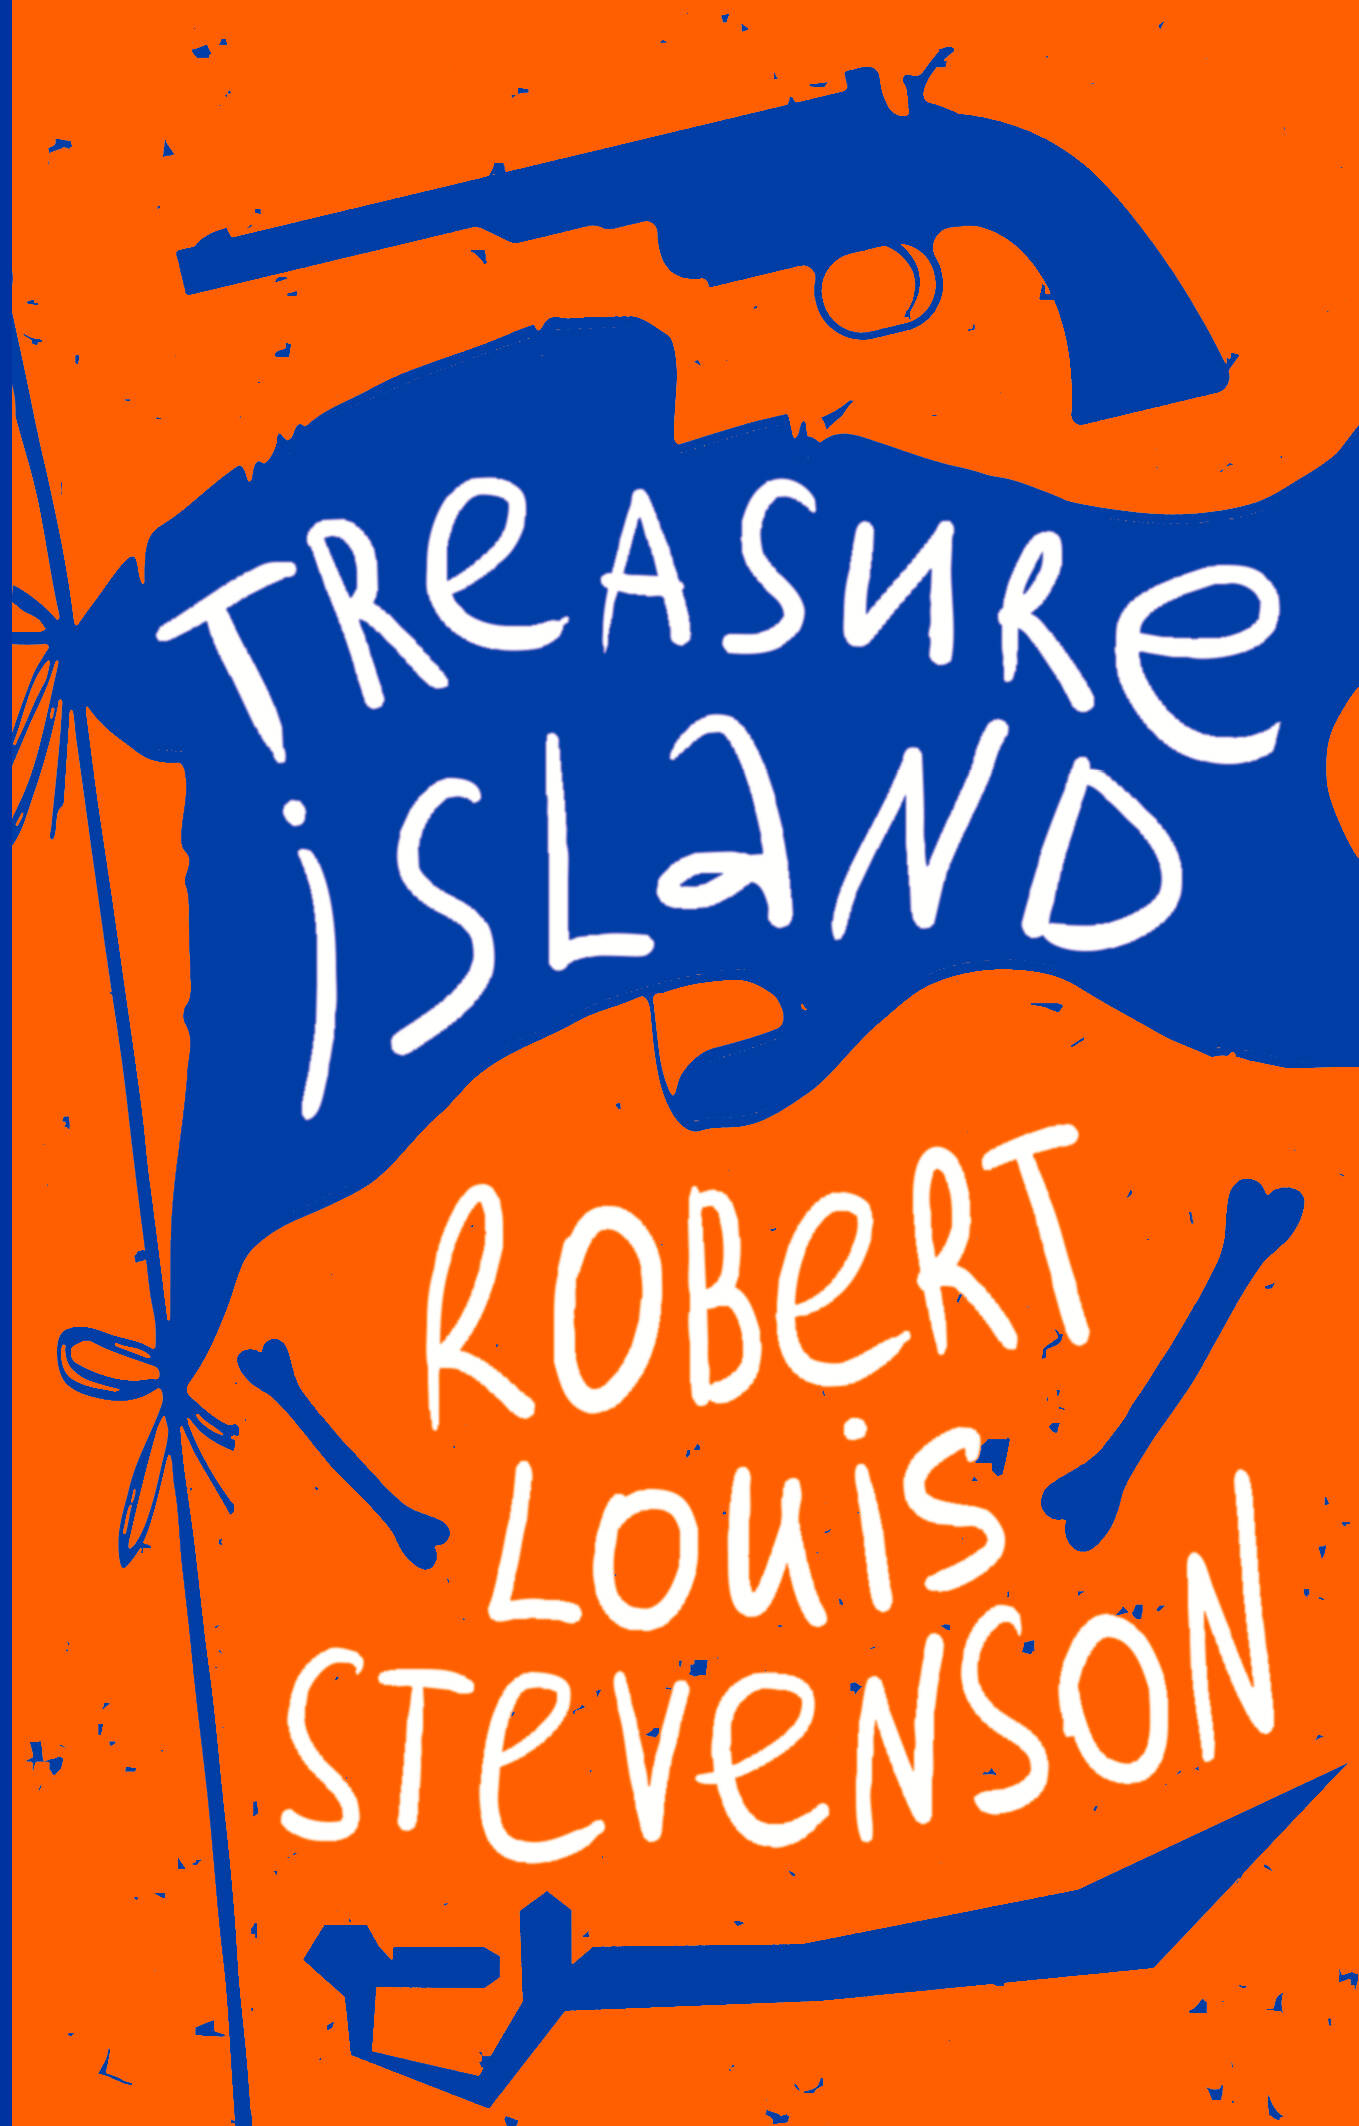 Стивенсон Роберт Льюис Balfour Treasure Island стивенсон роберт льюис treasure island